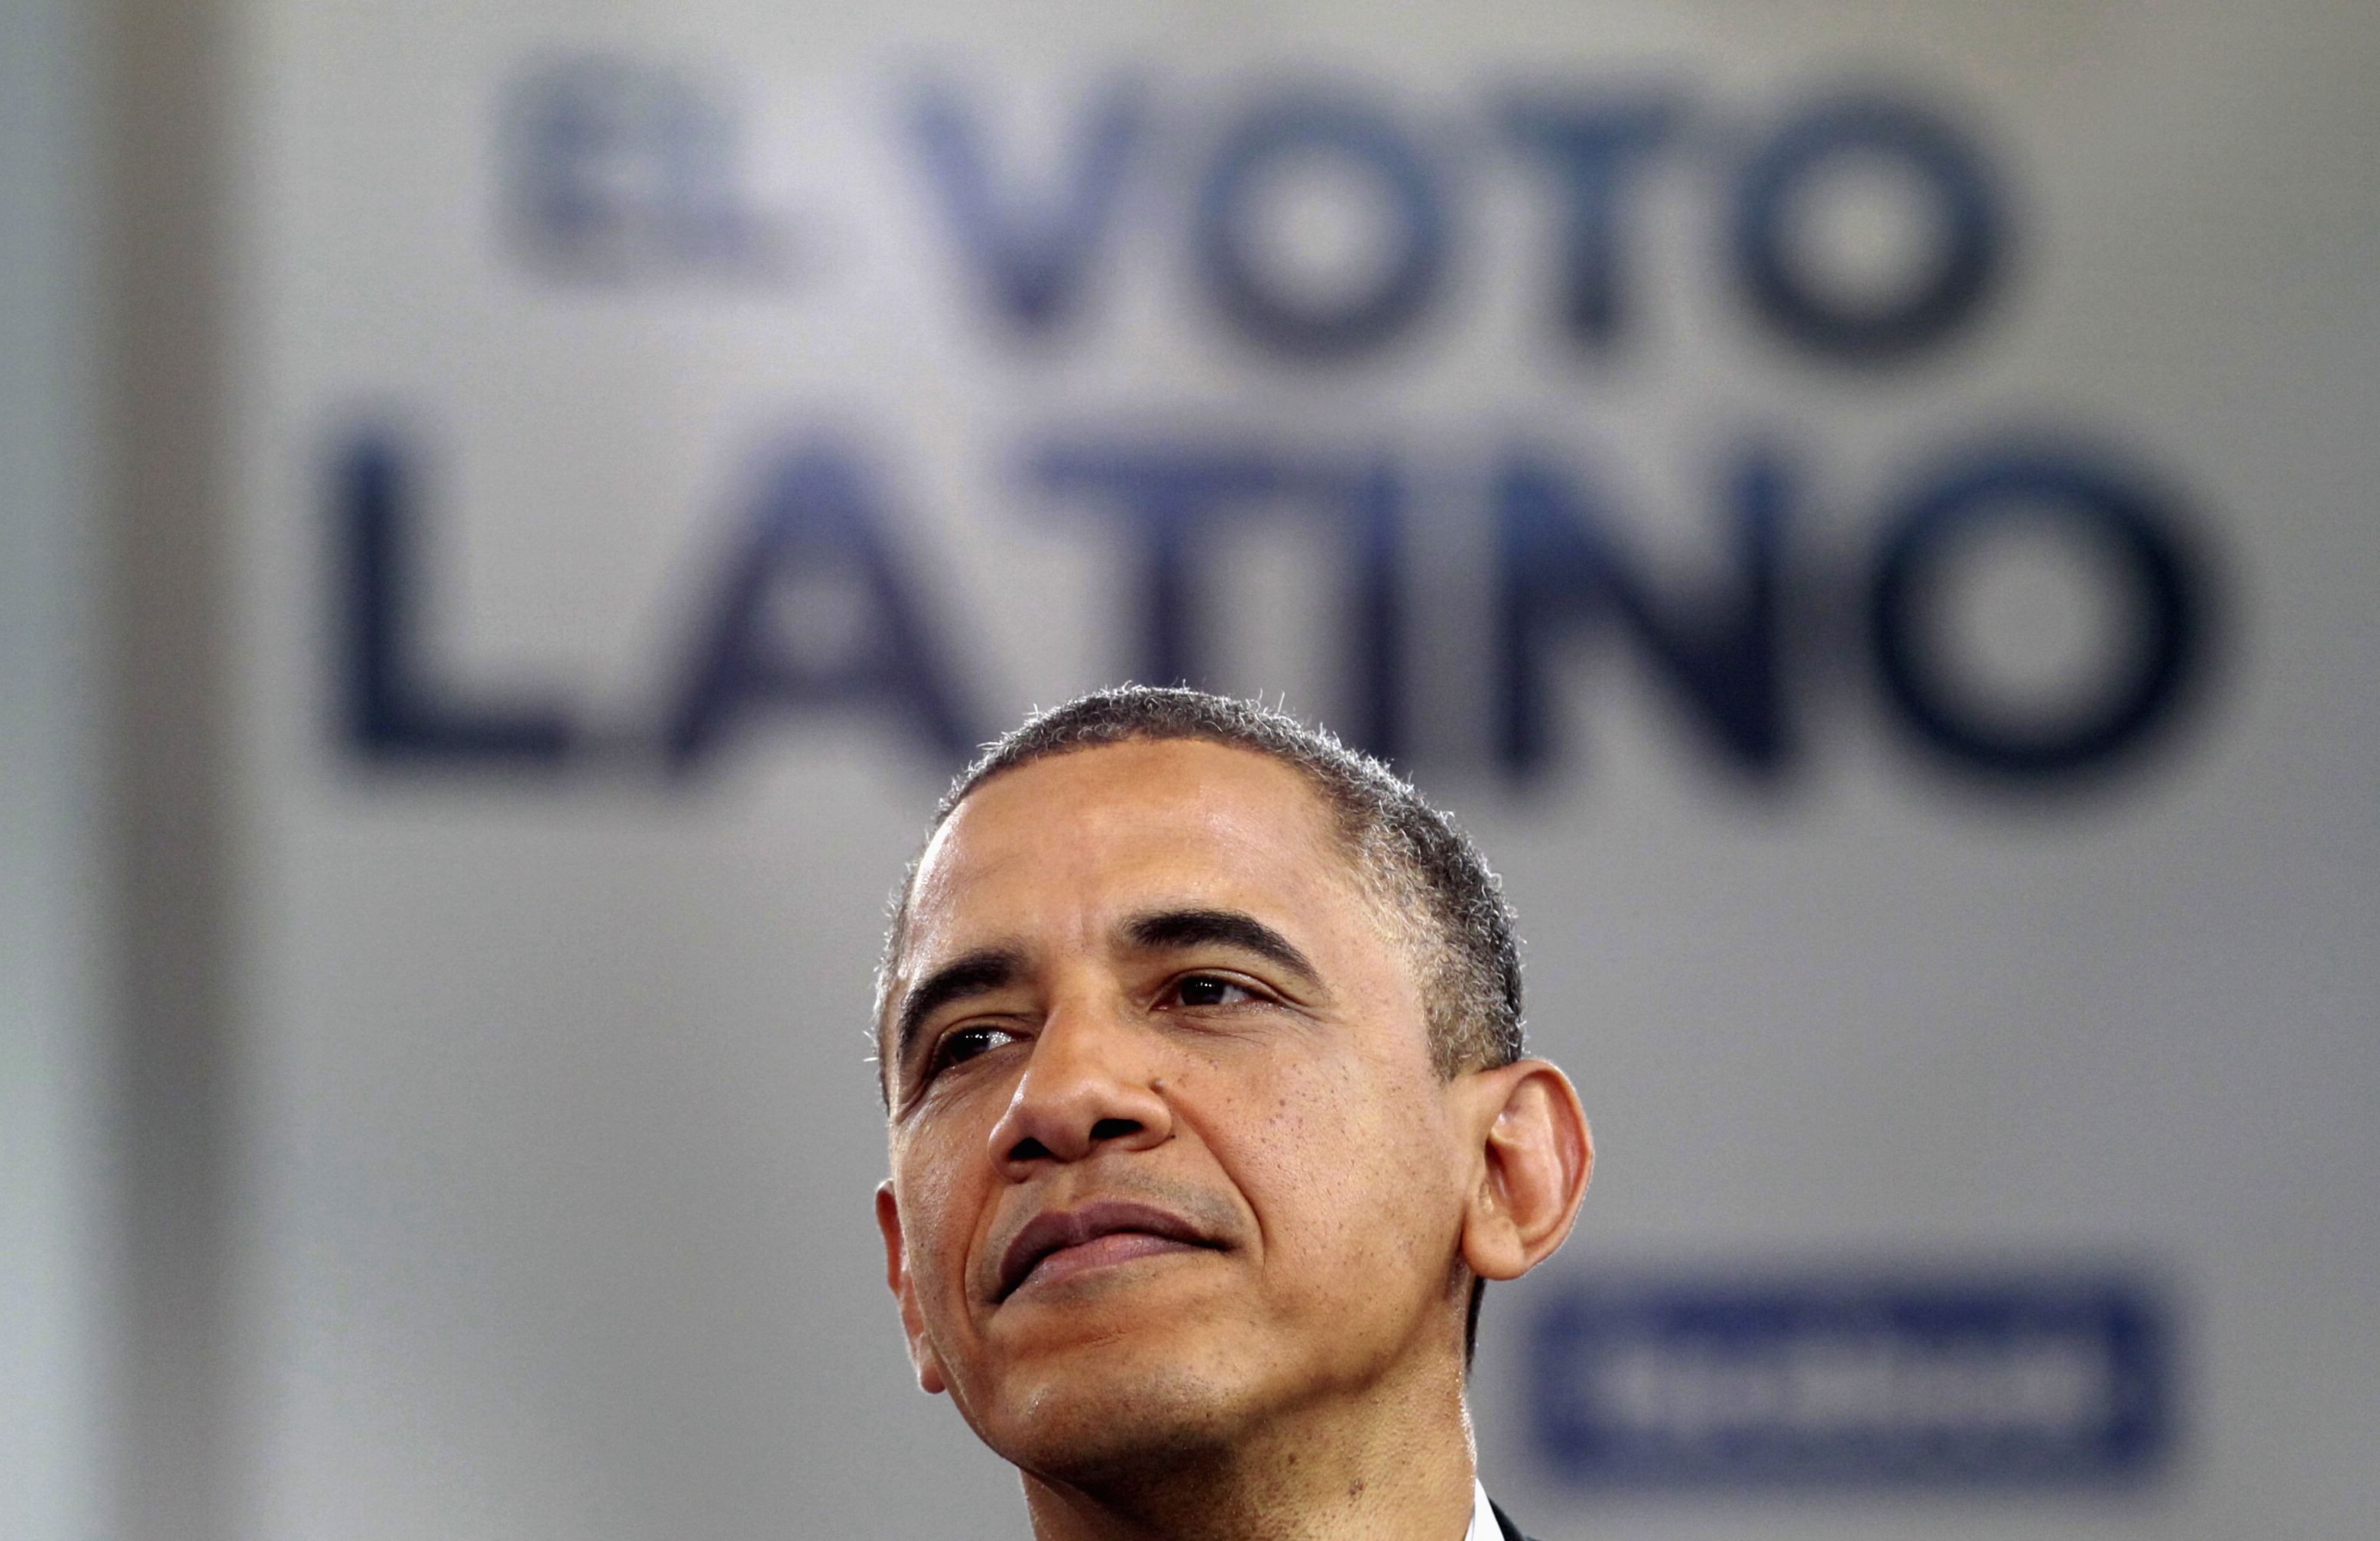 Obama with voto Latino logo (reuters)